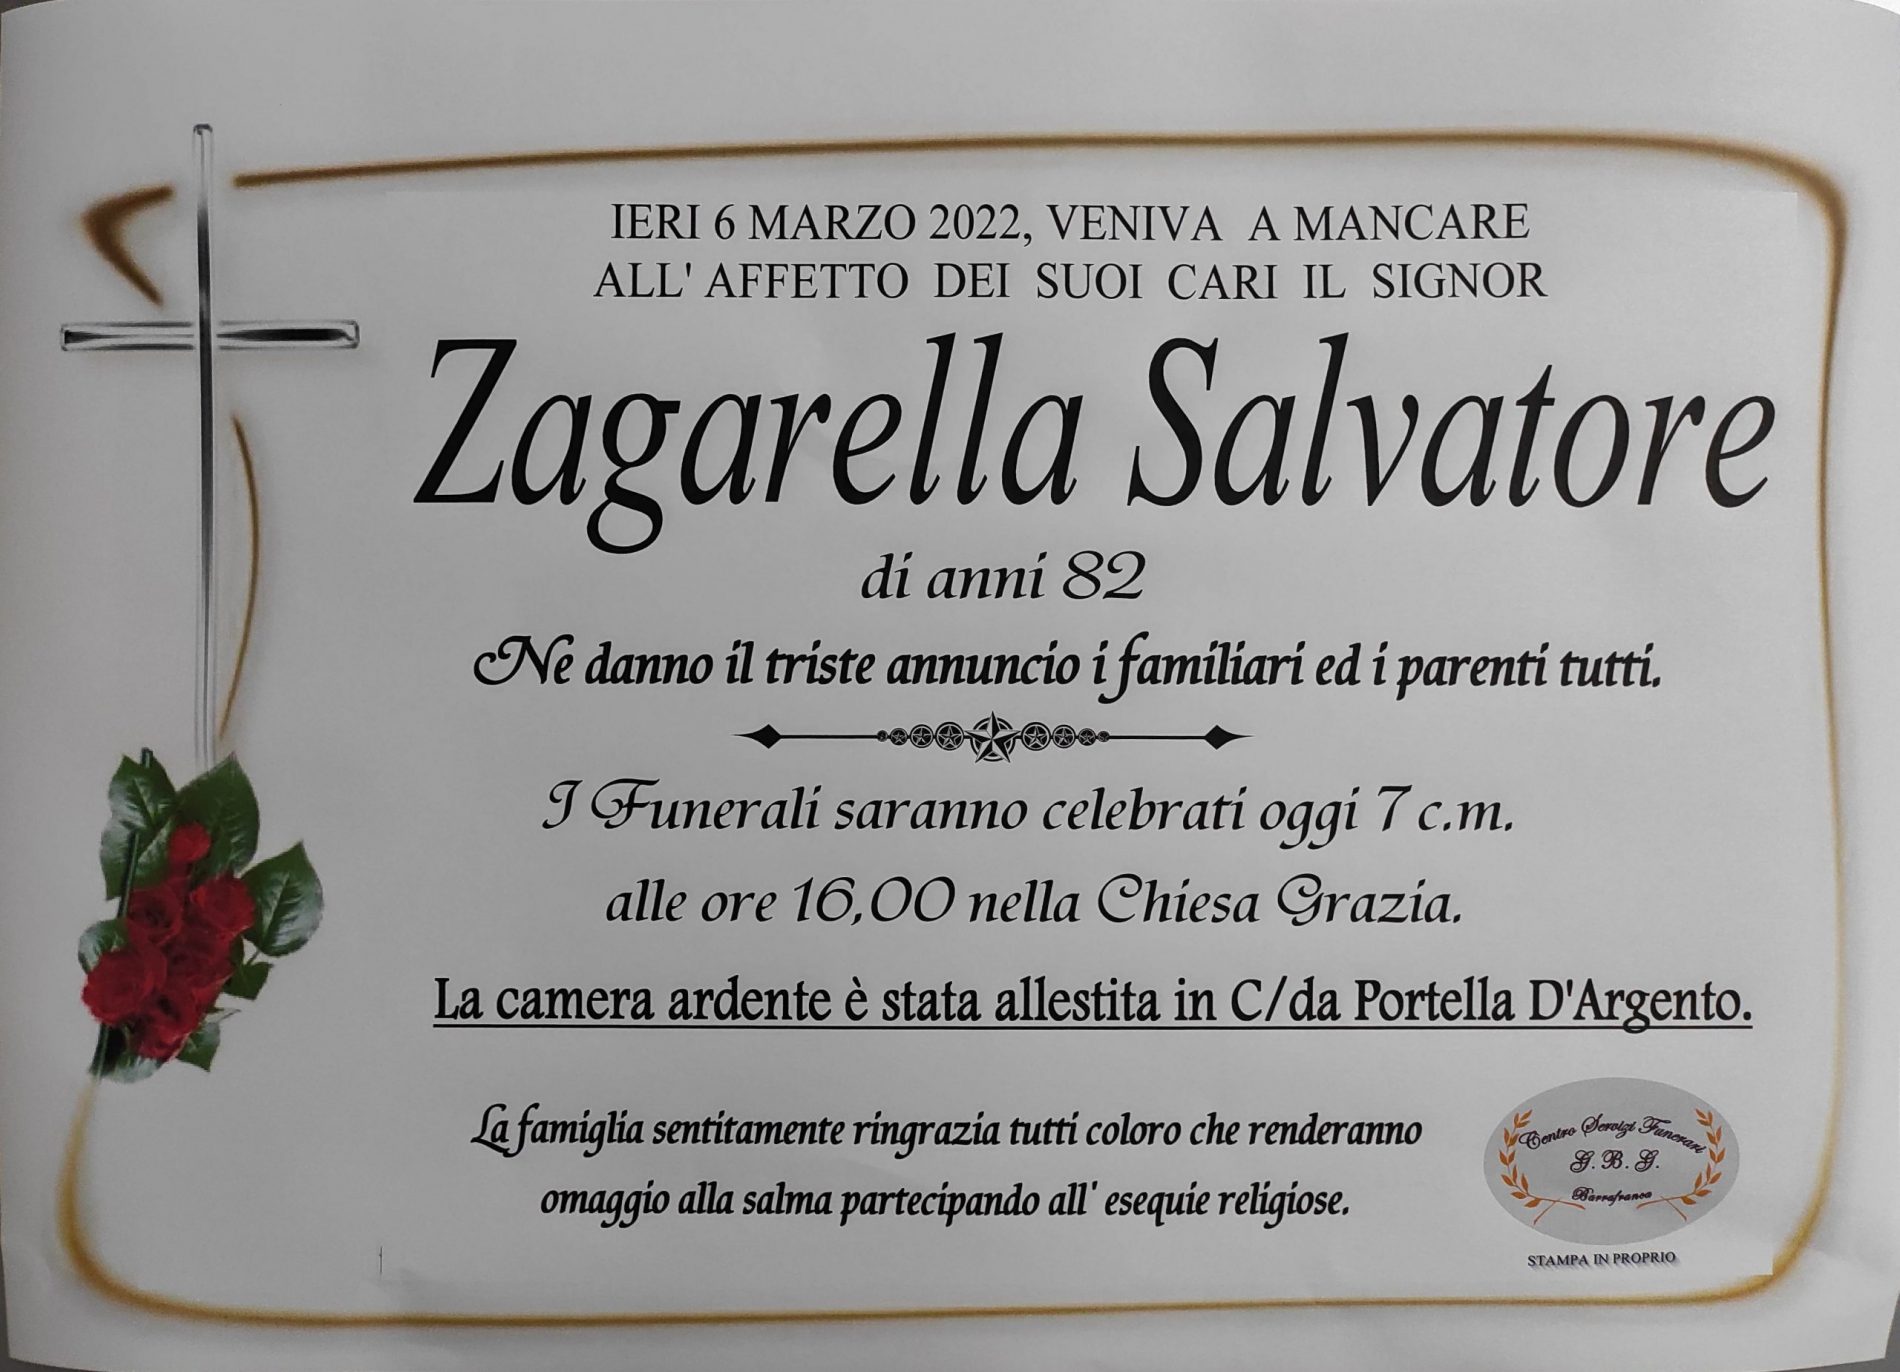 Annuncio servizi funerari agenzia G.B.G. sig. Zagarella Salvatore di anni 82